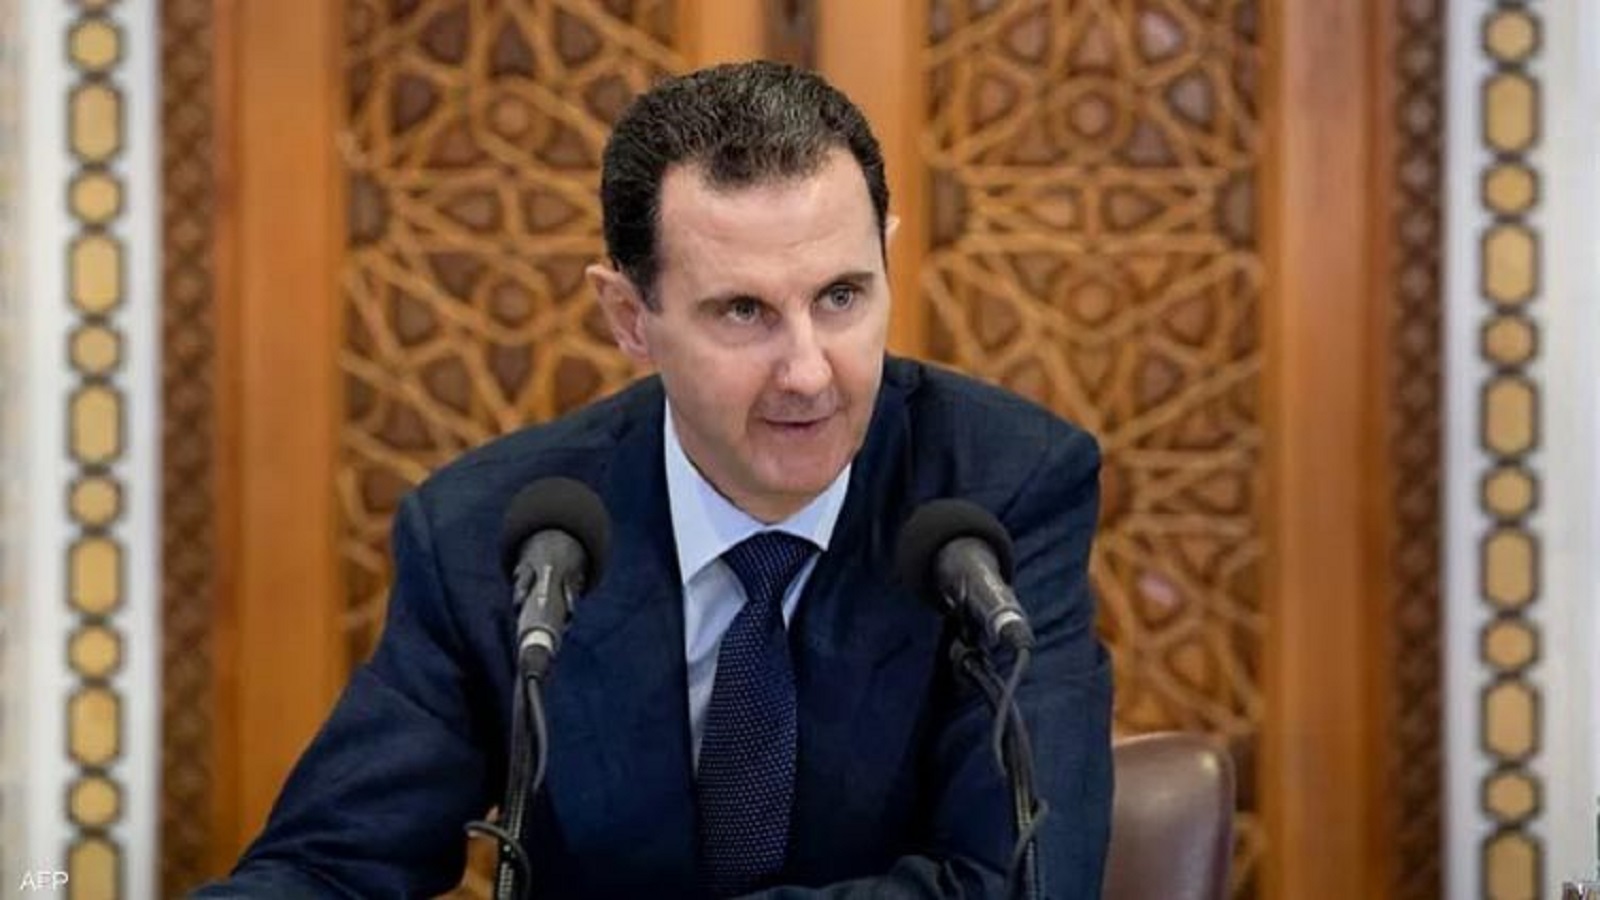 سوريا:تجميد ملاحقة النظام للمطلوبين.."كذبة خبيثة"